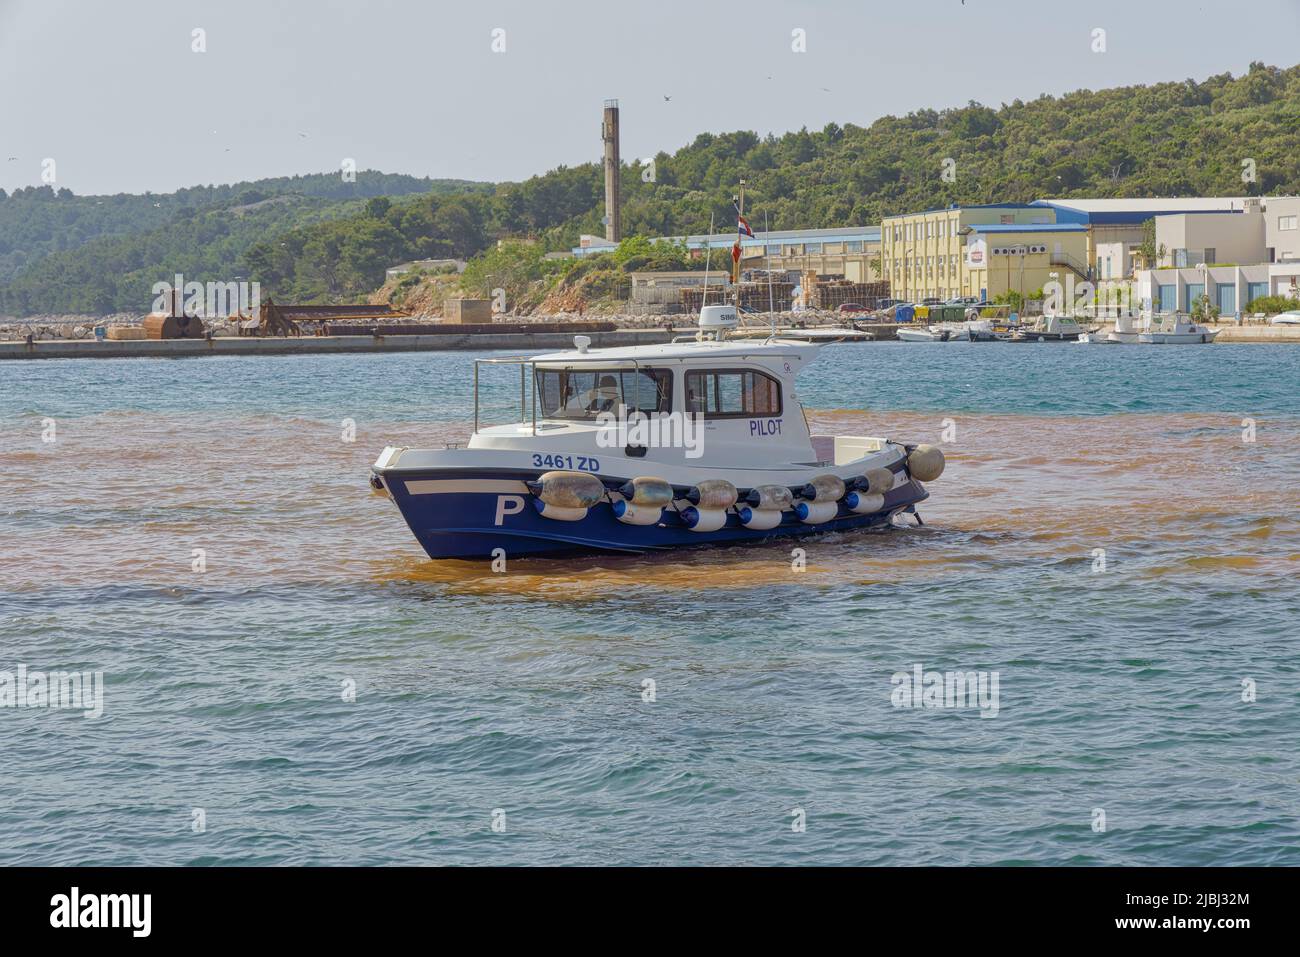 La barca pilota supervisiona le attività di costruzione nella città vecchia di sali, Croazia Foto Stock